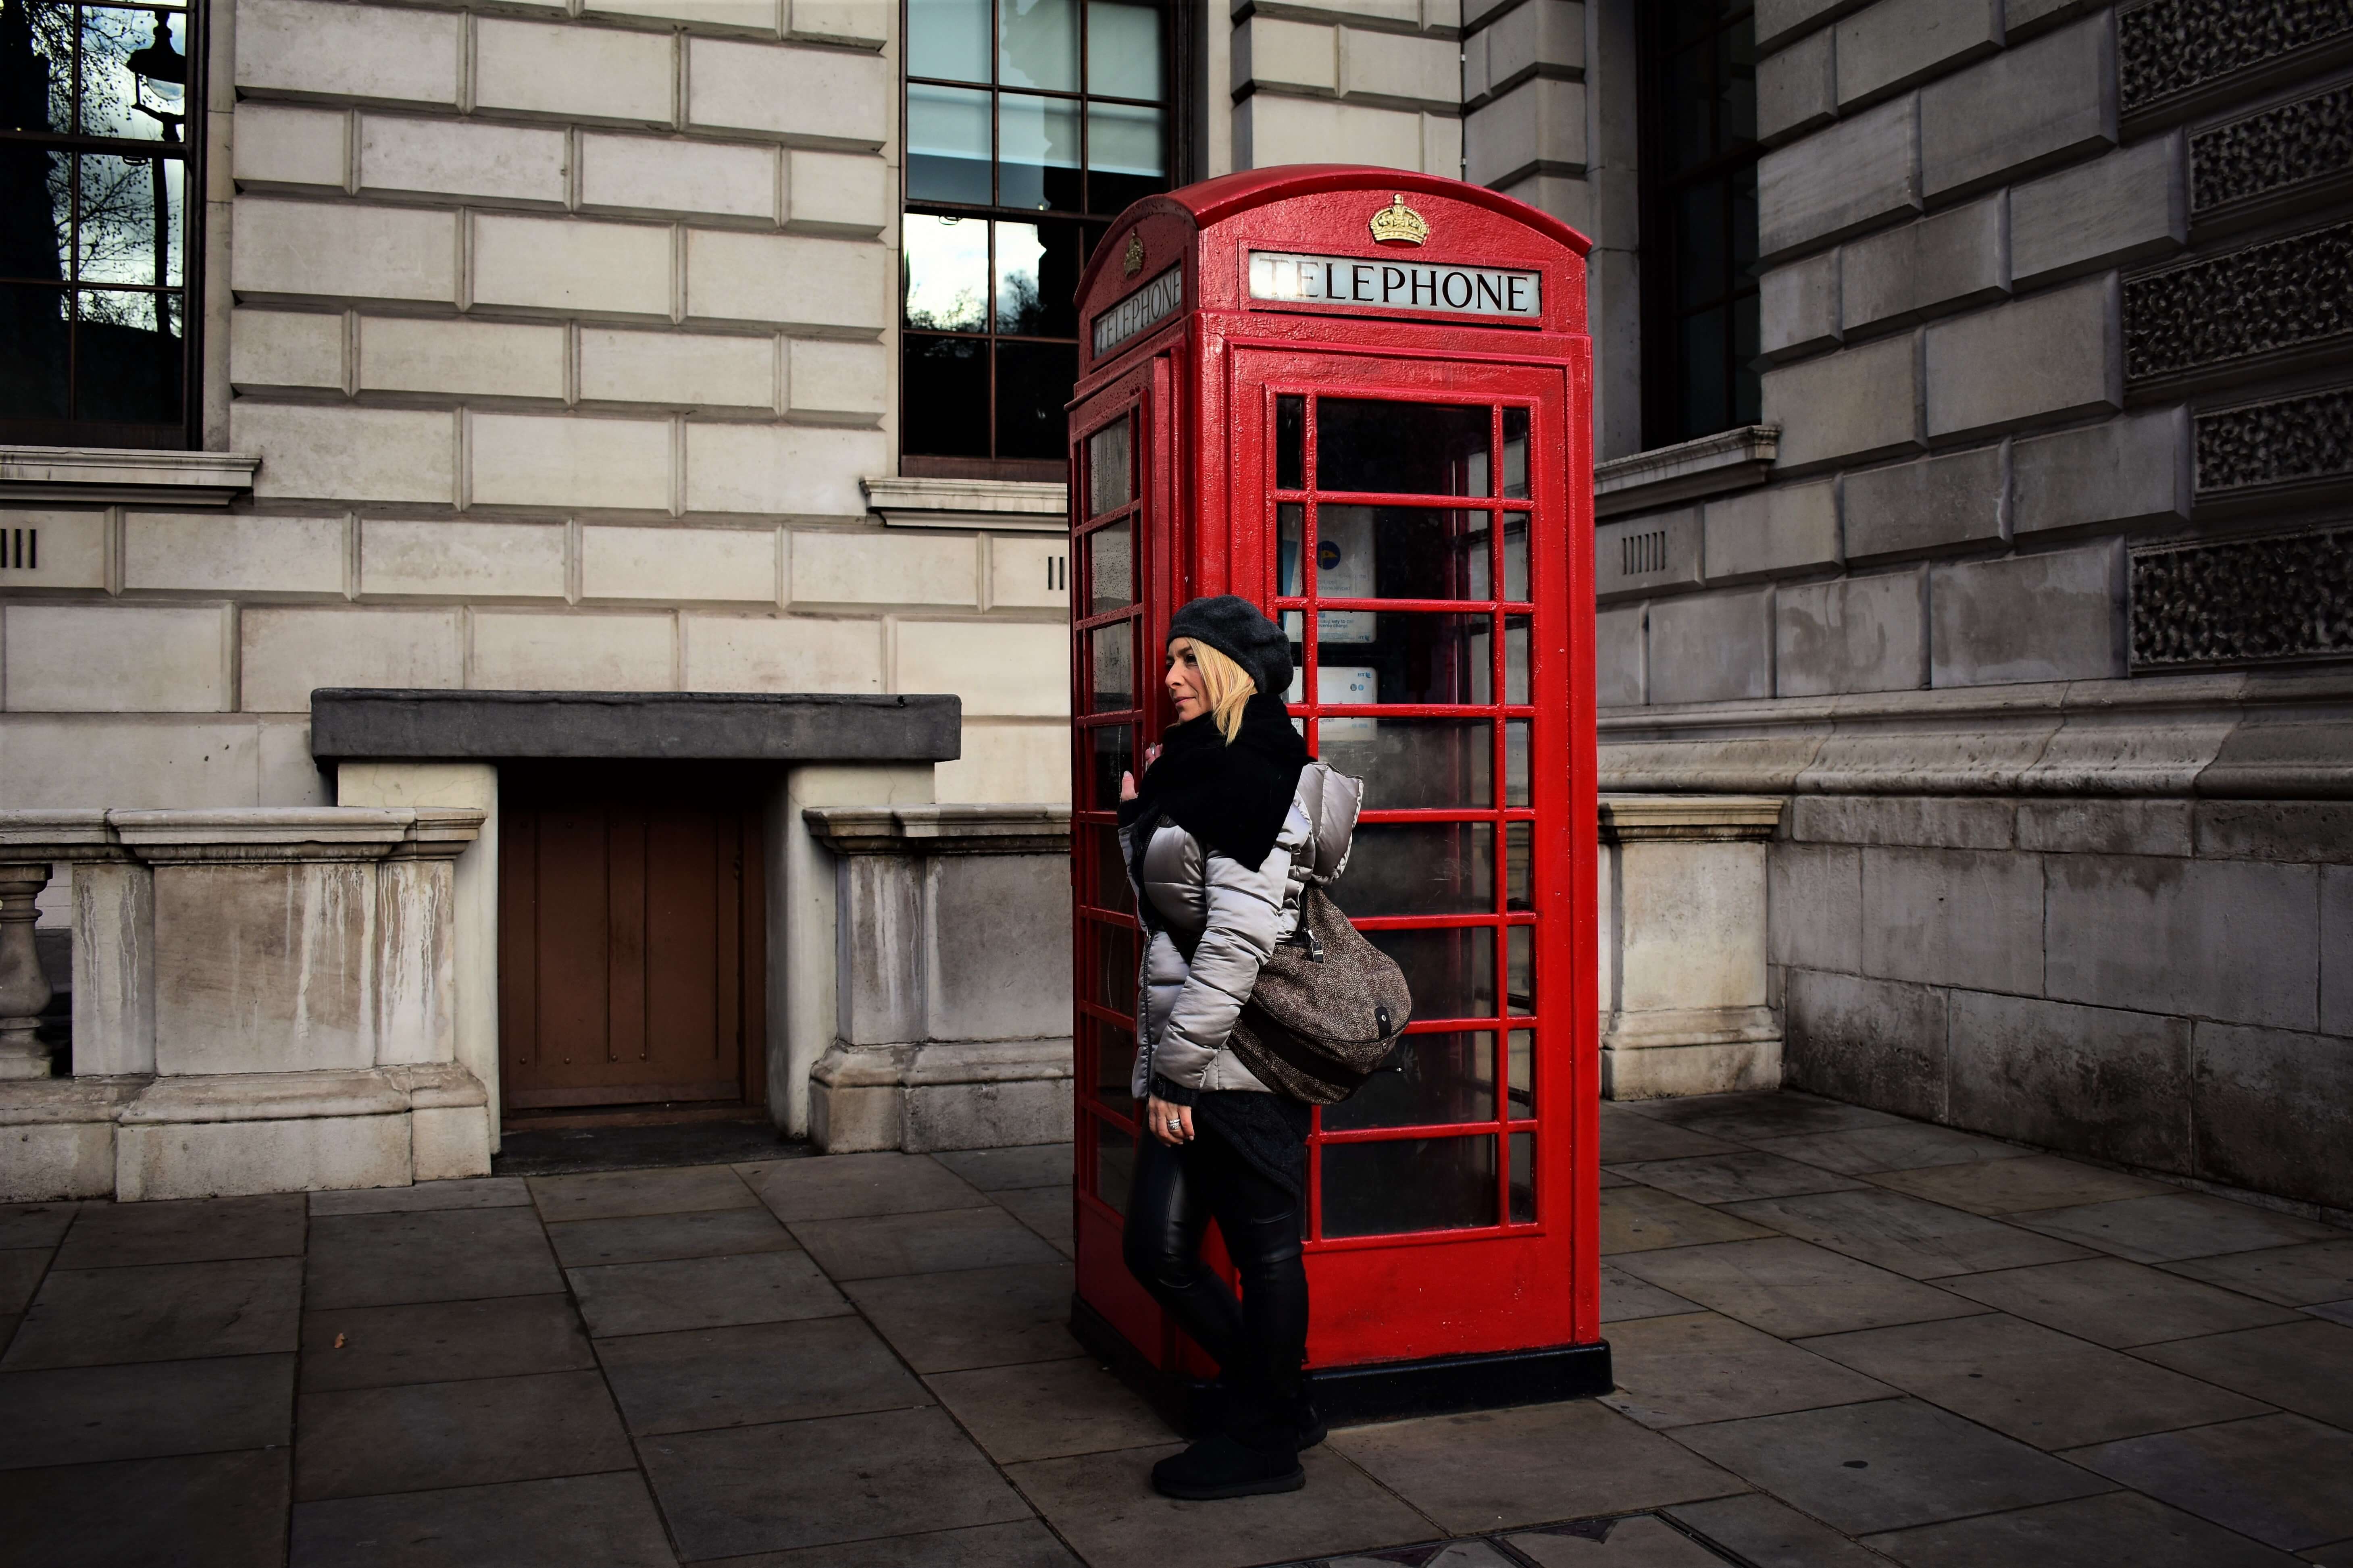 Boks telepon di London (Sumber gambar: Unsplash/ Luke)